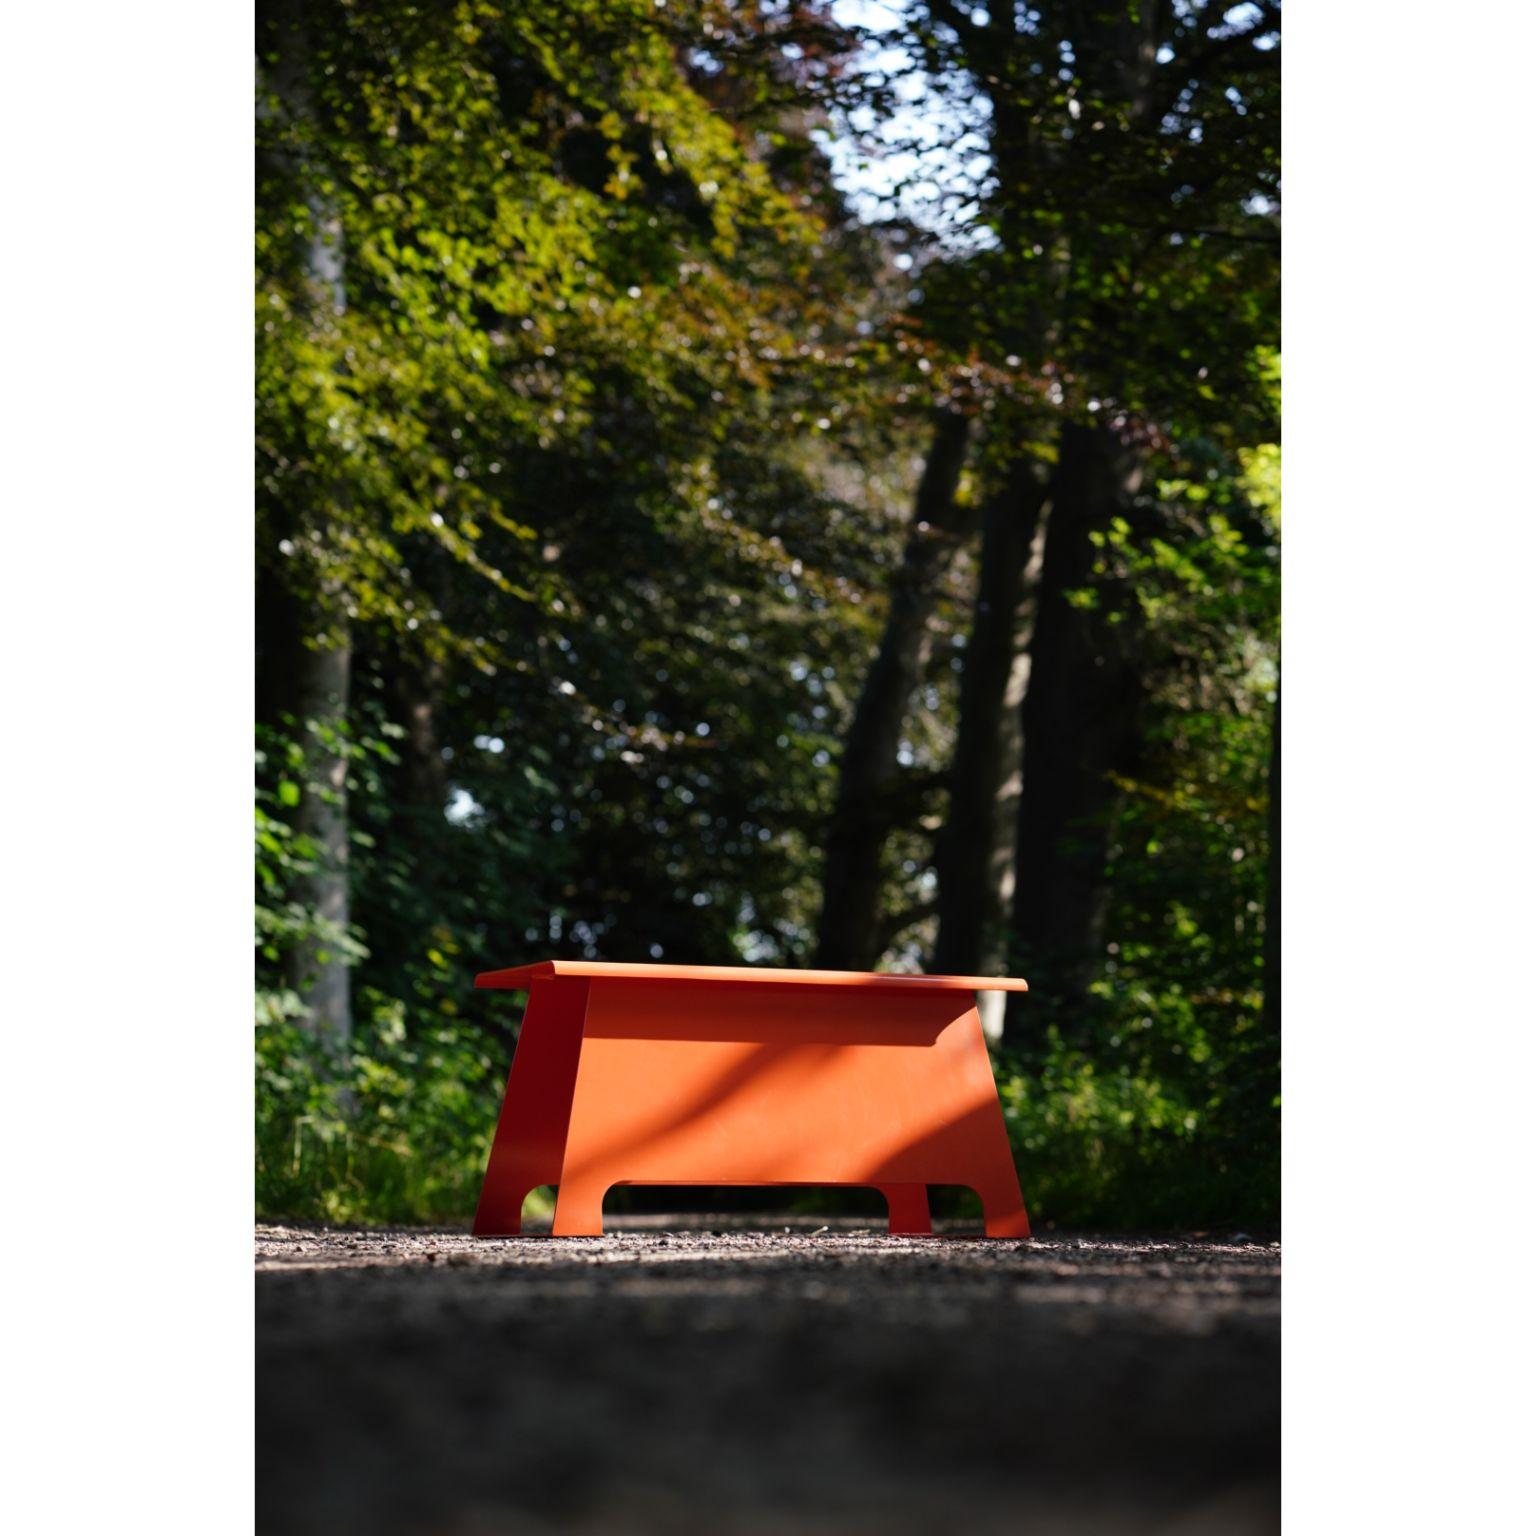 The Old School 100 Orange Bench by Harm De Veer 2